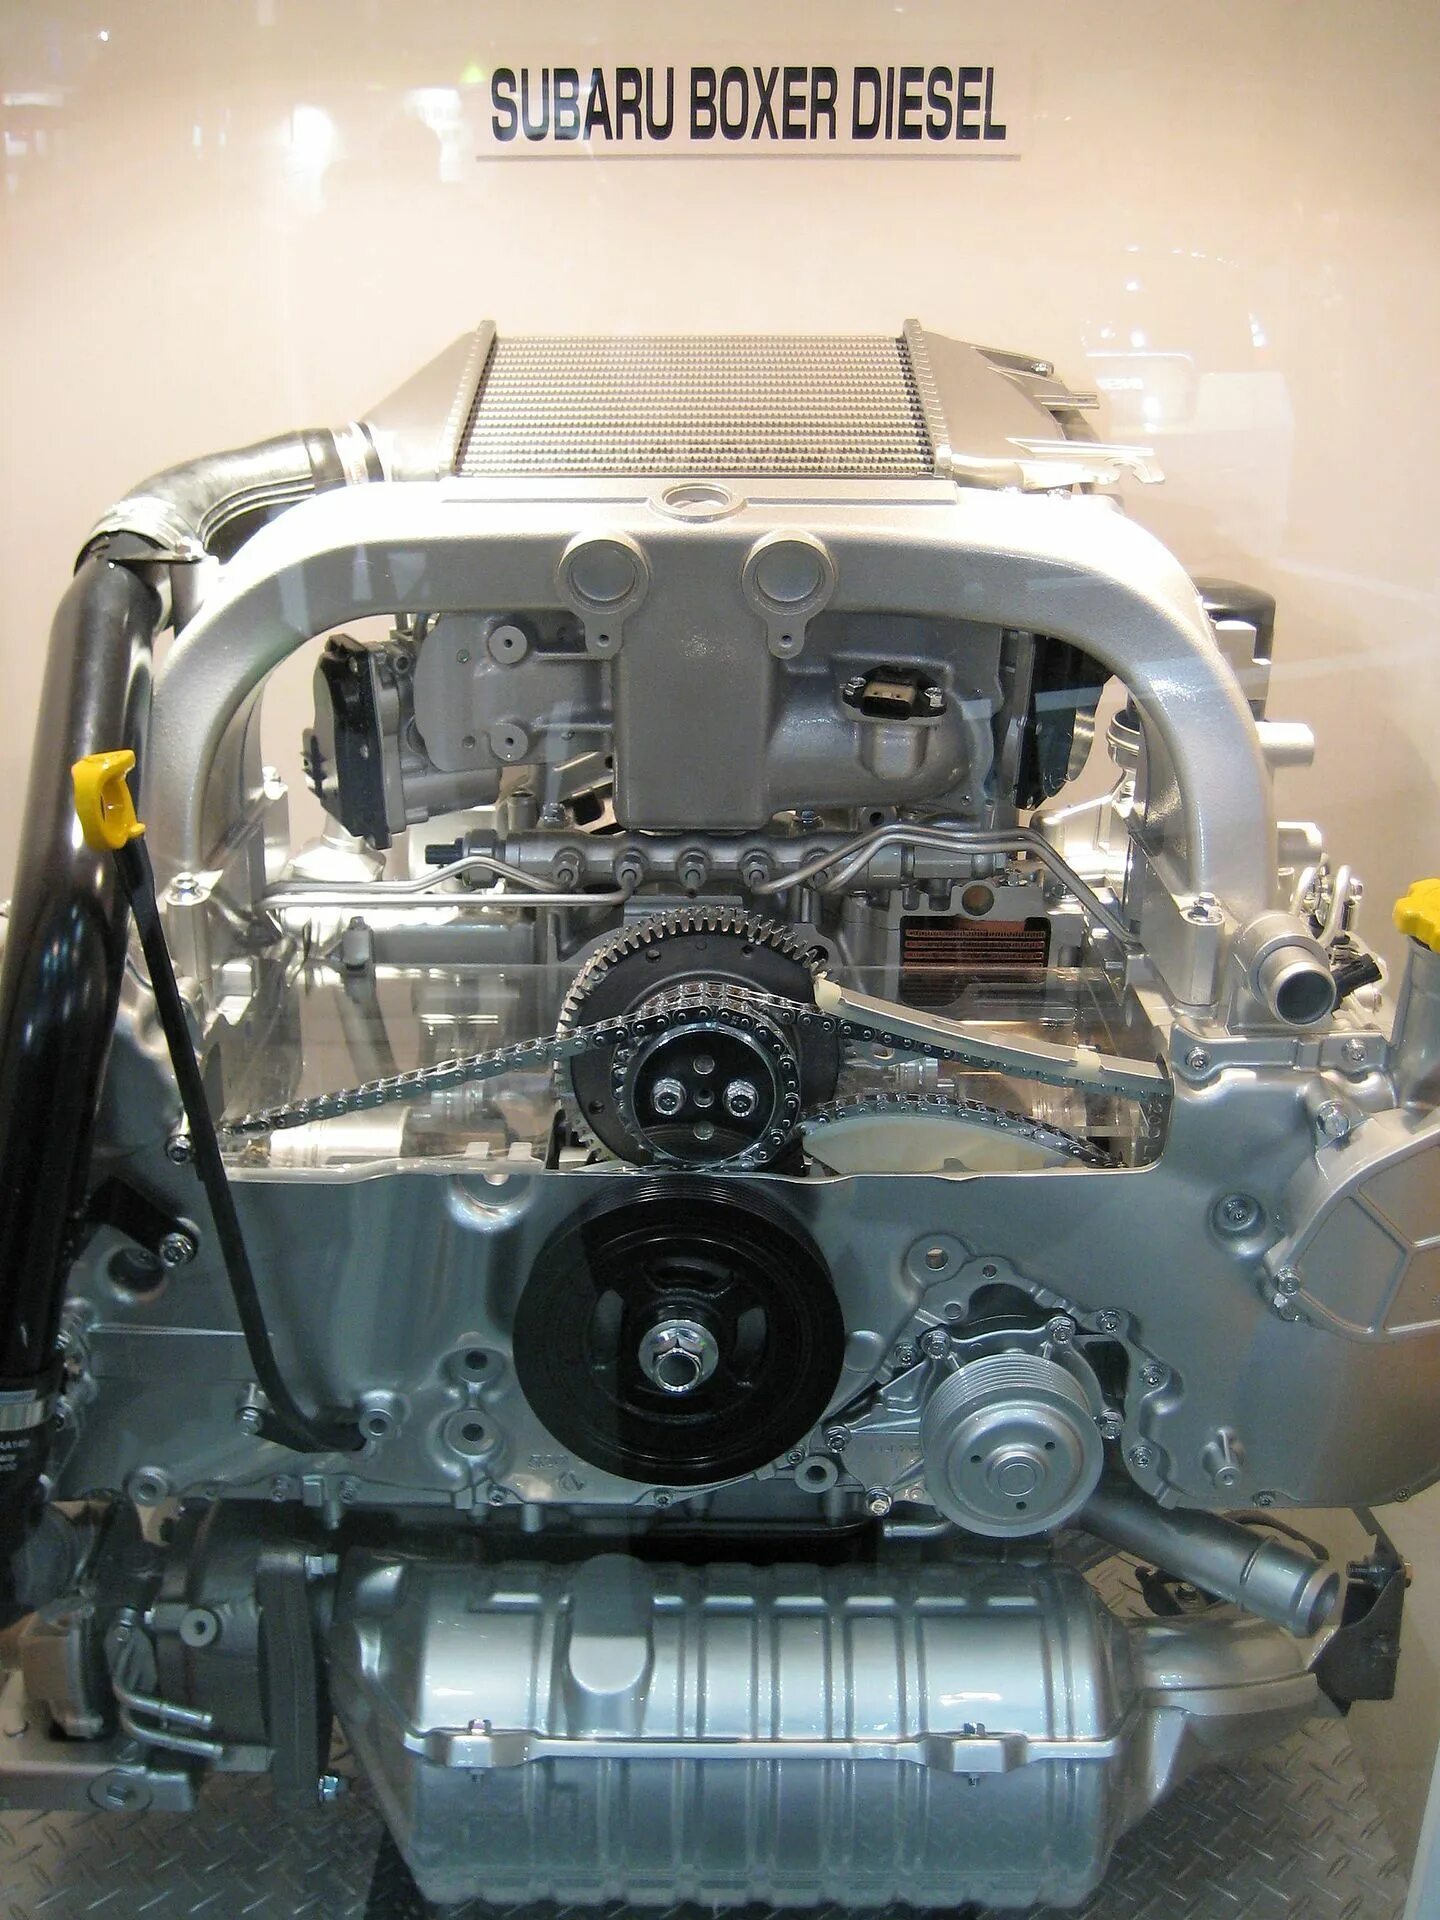 Субару Boxer двигатель. Оппозитный двигатель Субару. Subaru Boxer h6. Subaru Boxer 6. Flat engine